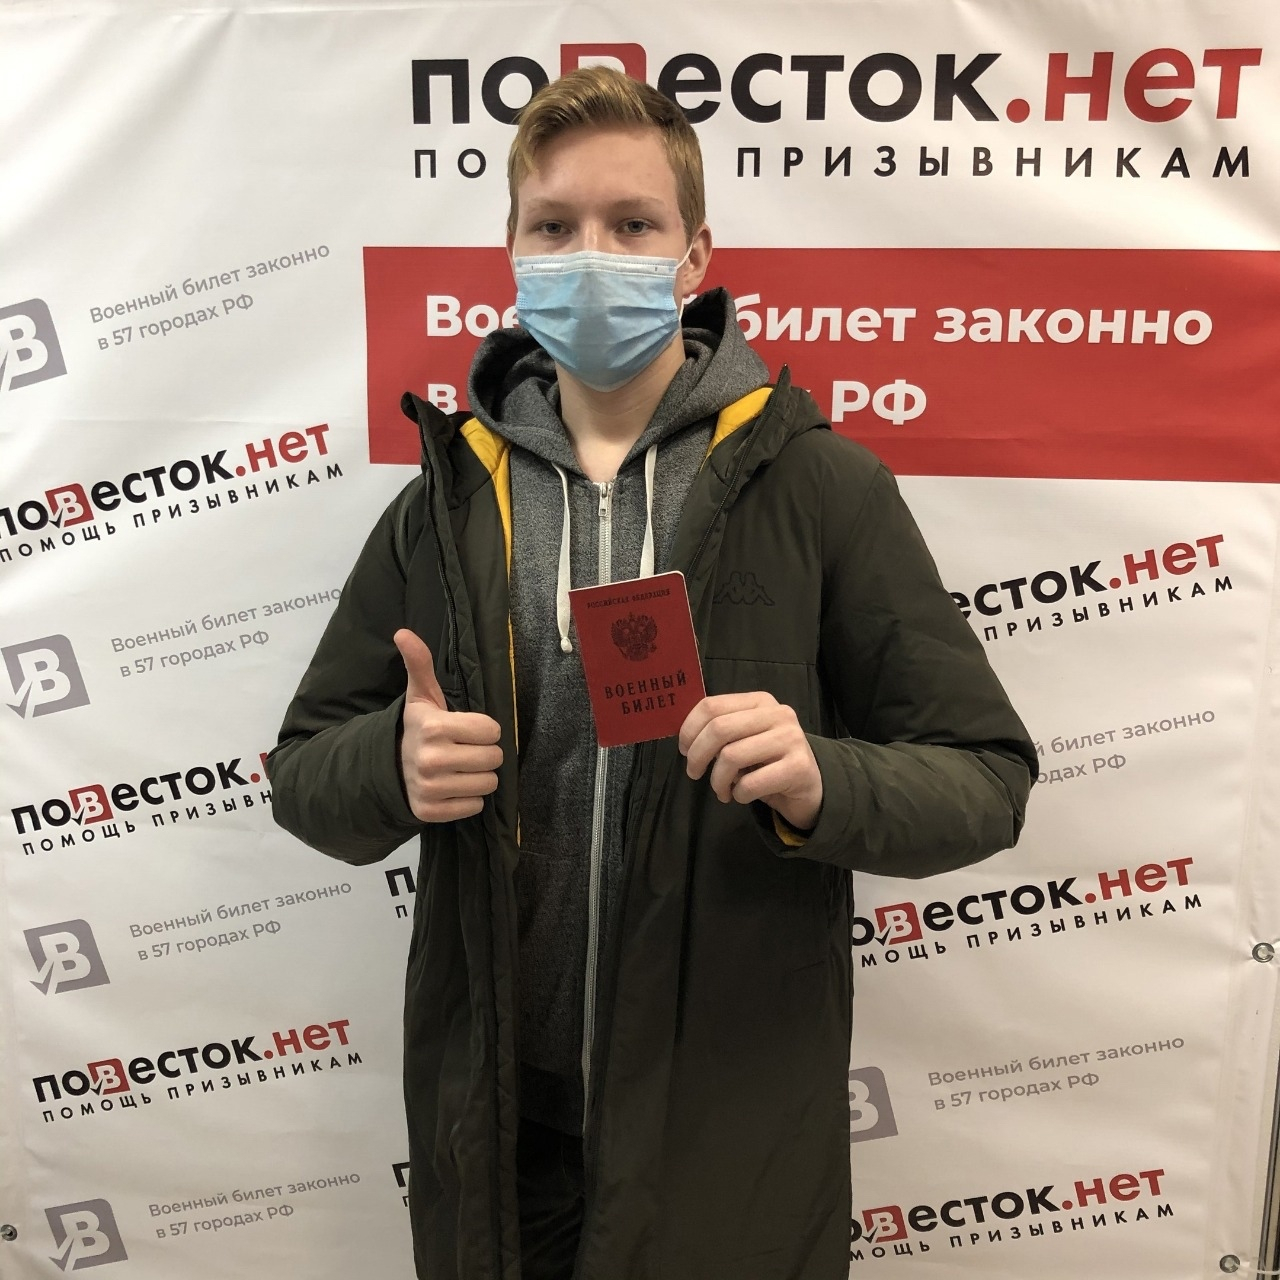 Как компания «Повесток.нет» помогает призывникам из Кирова и всей России?